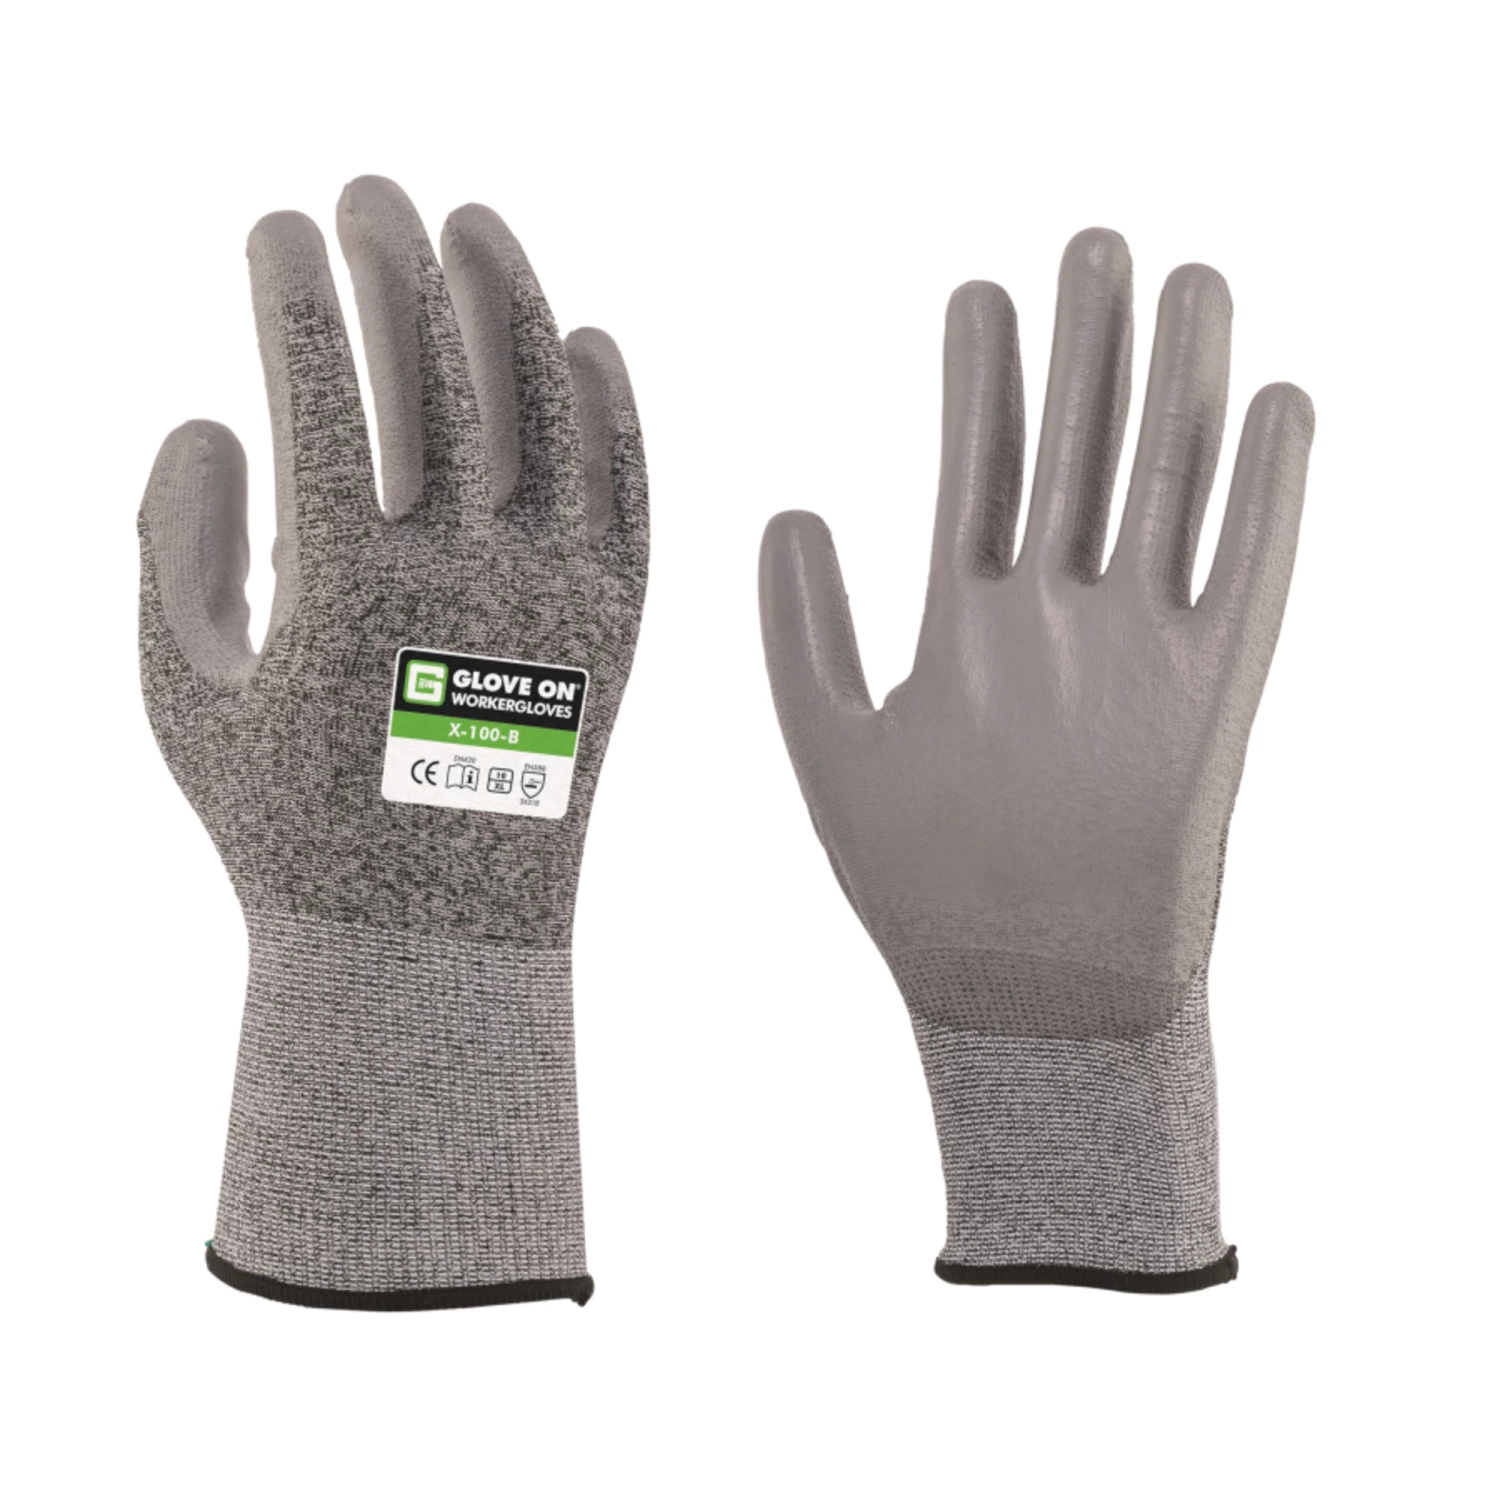 Glove On Protect X 100 B werkhandschoen - maat 10